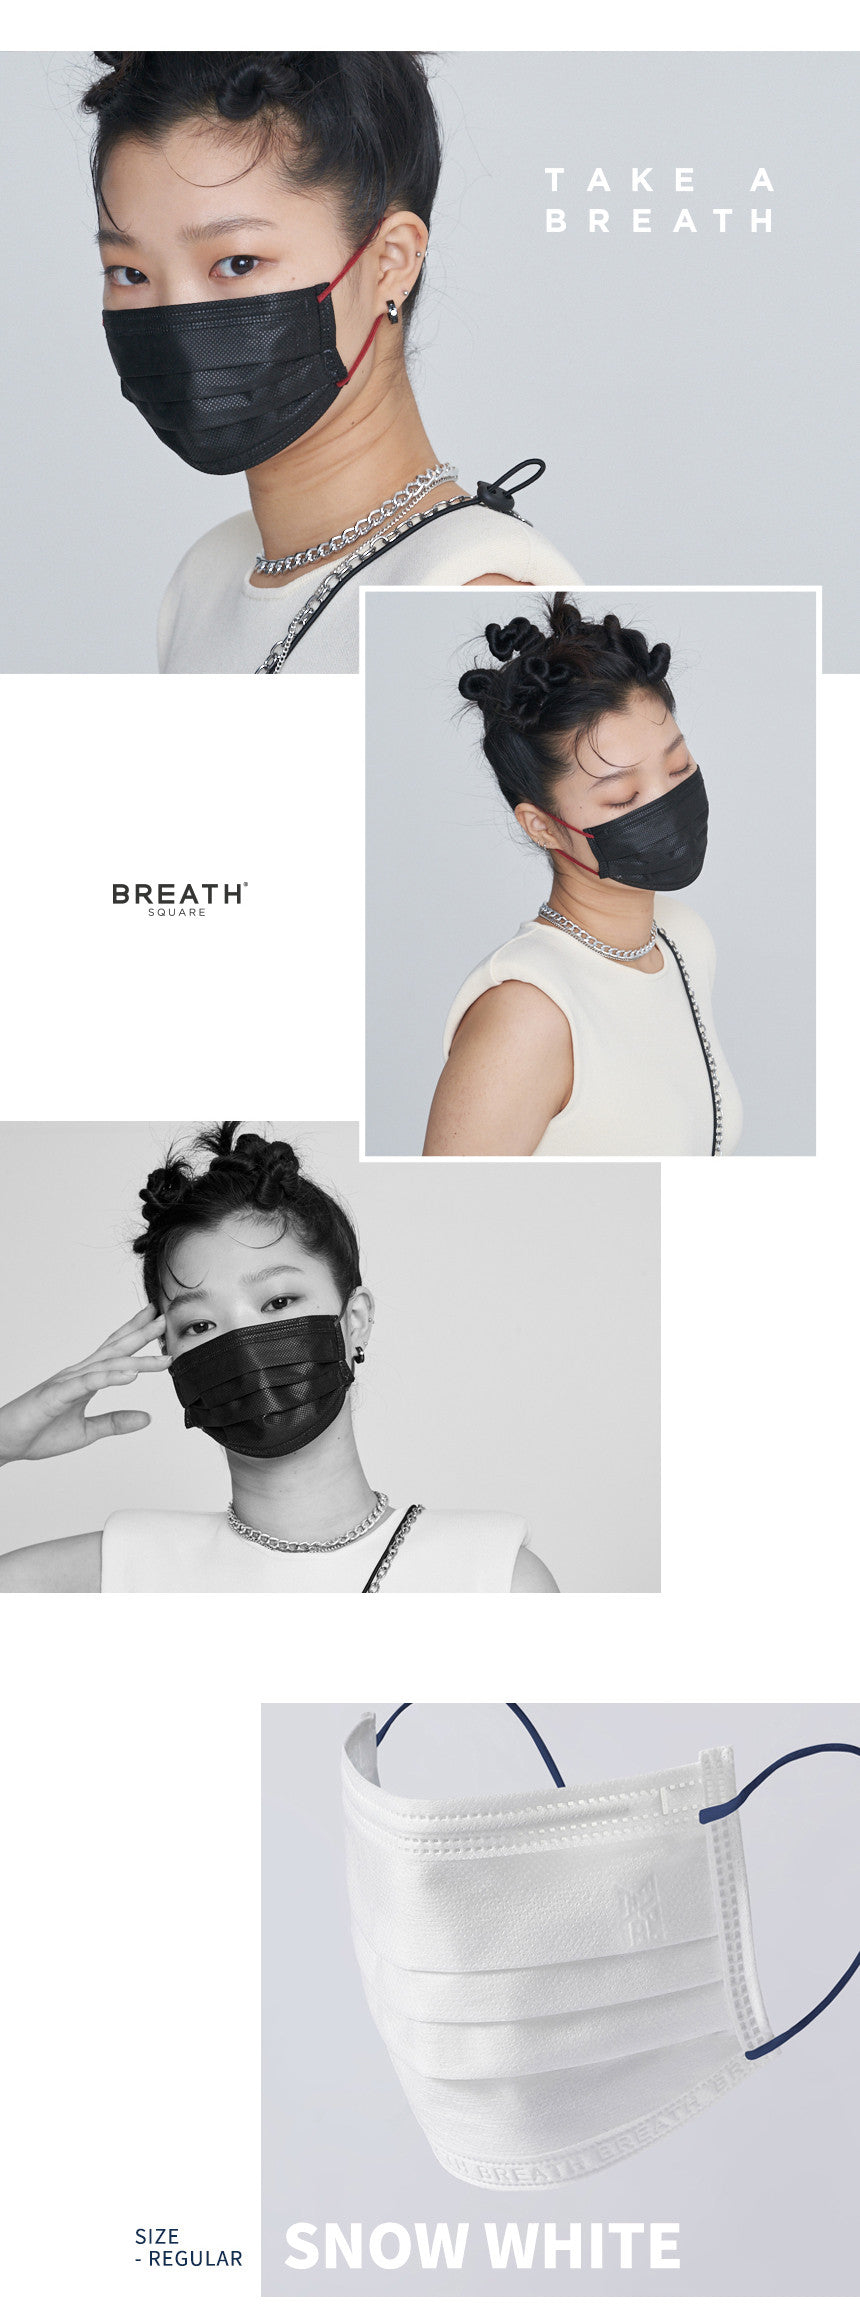 TinyTAN BREATH Silberne quadratische Maske + Riemen + Etui